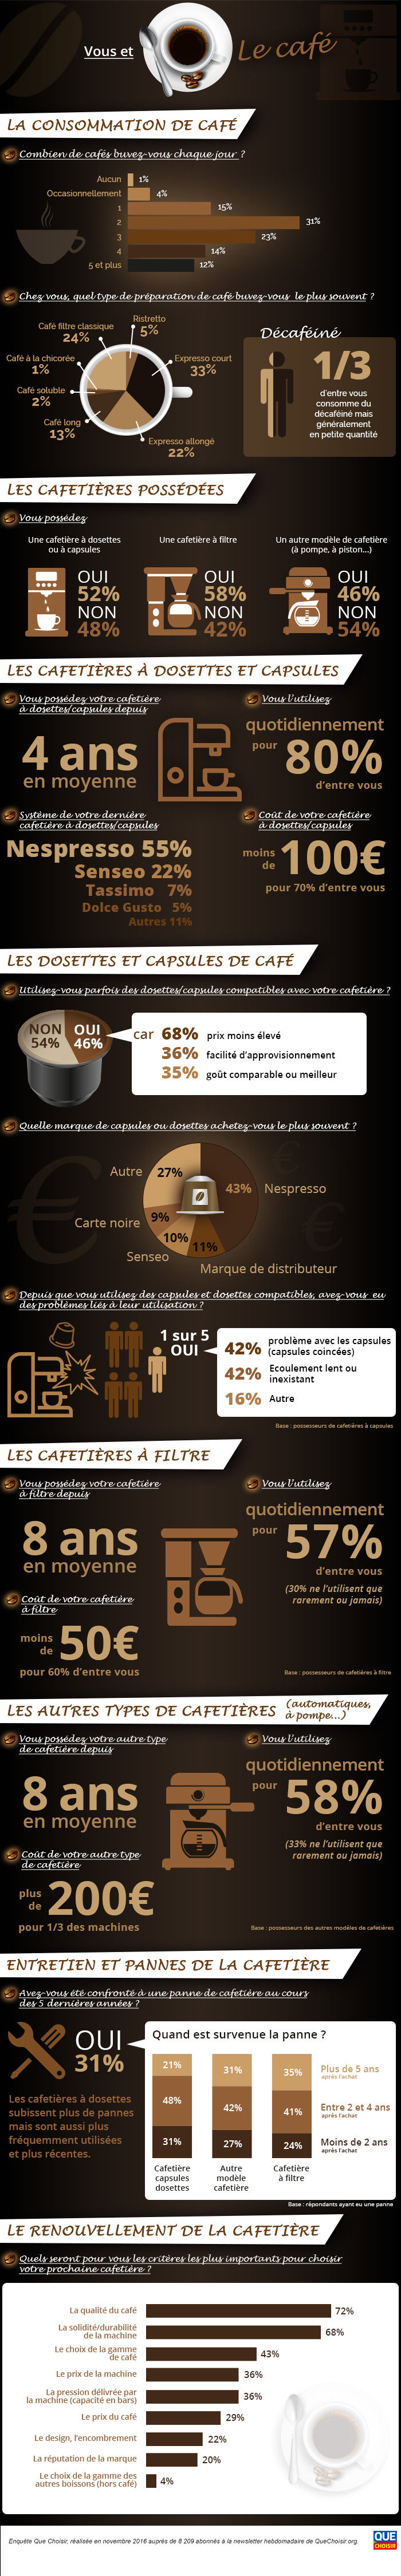 infographie-vous-et-cafe